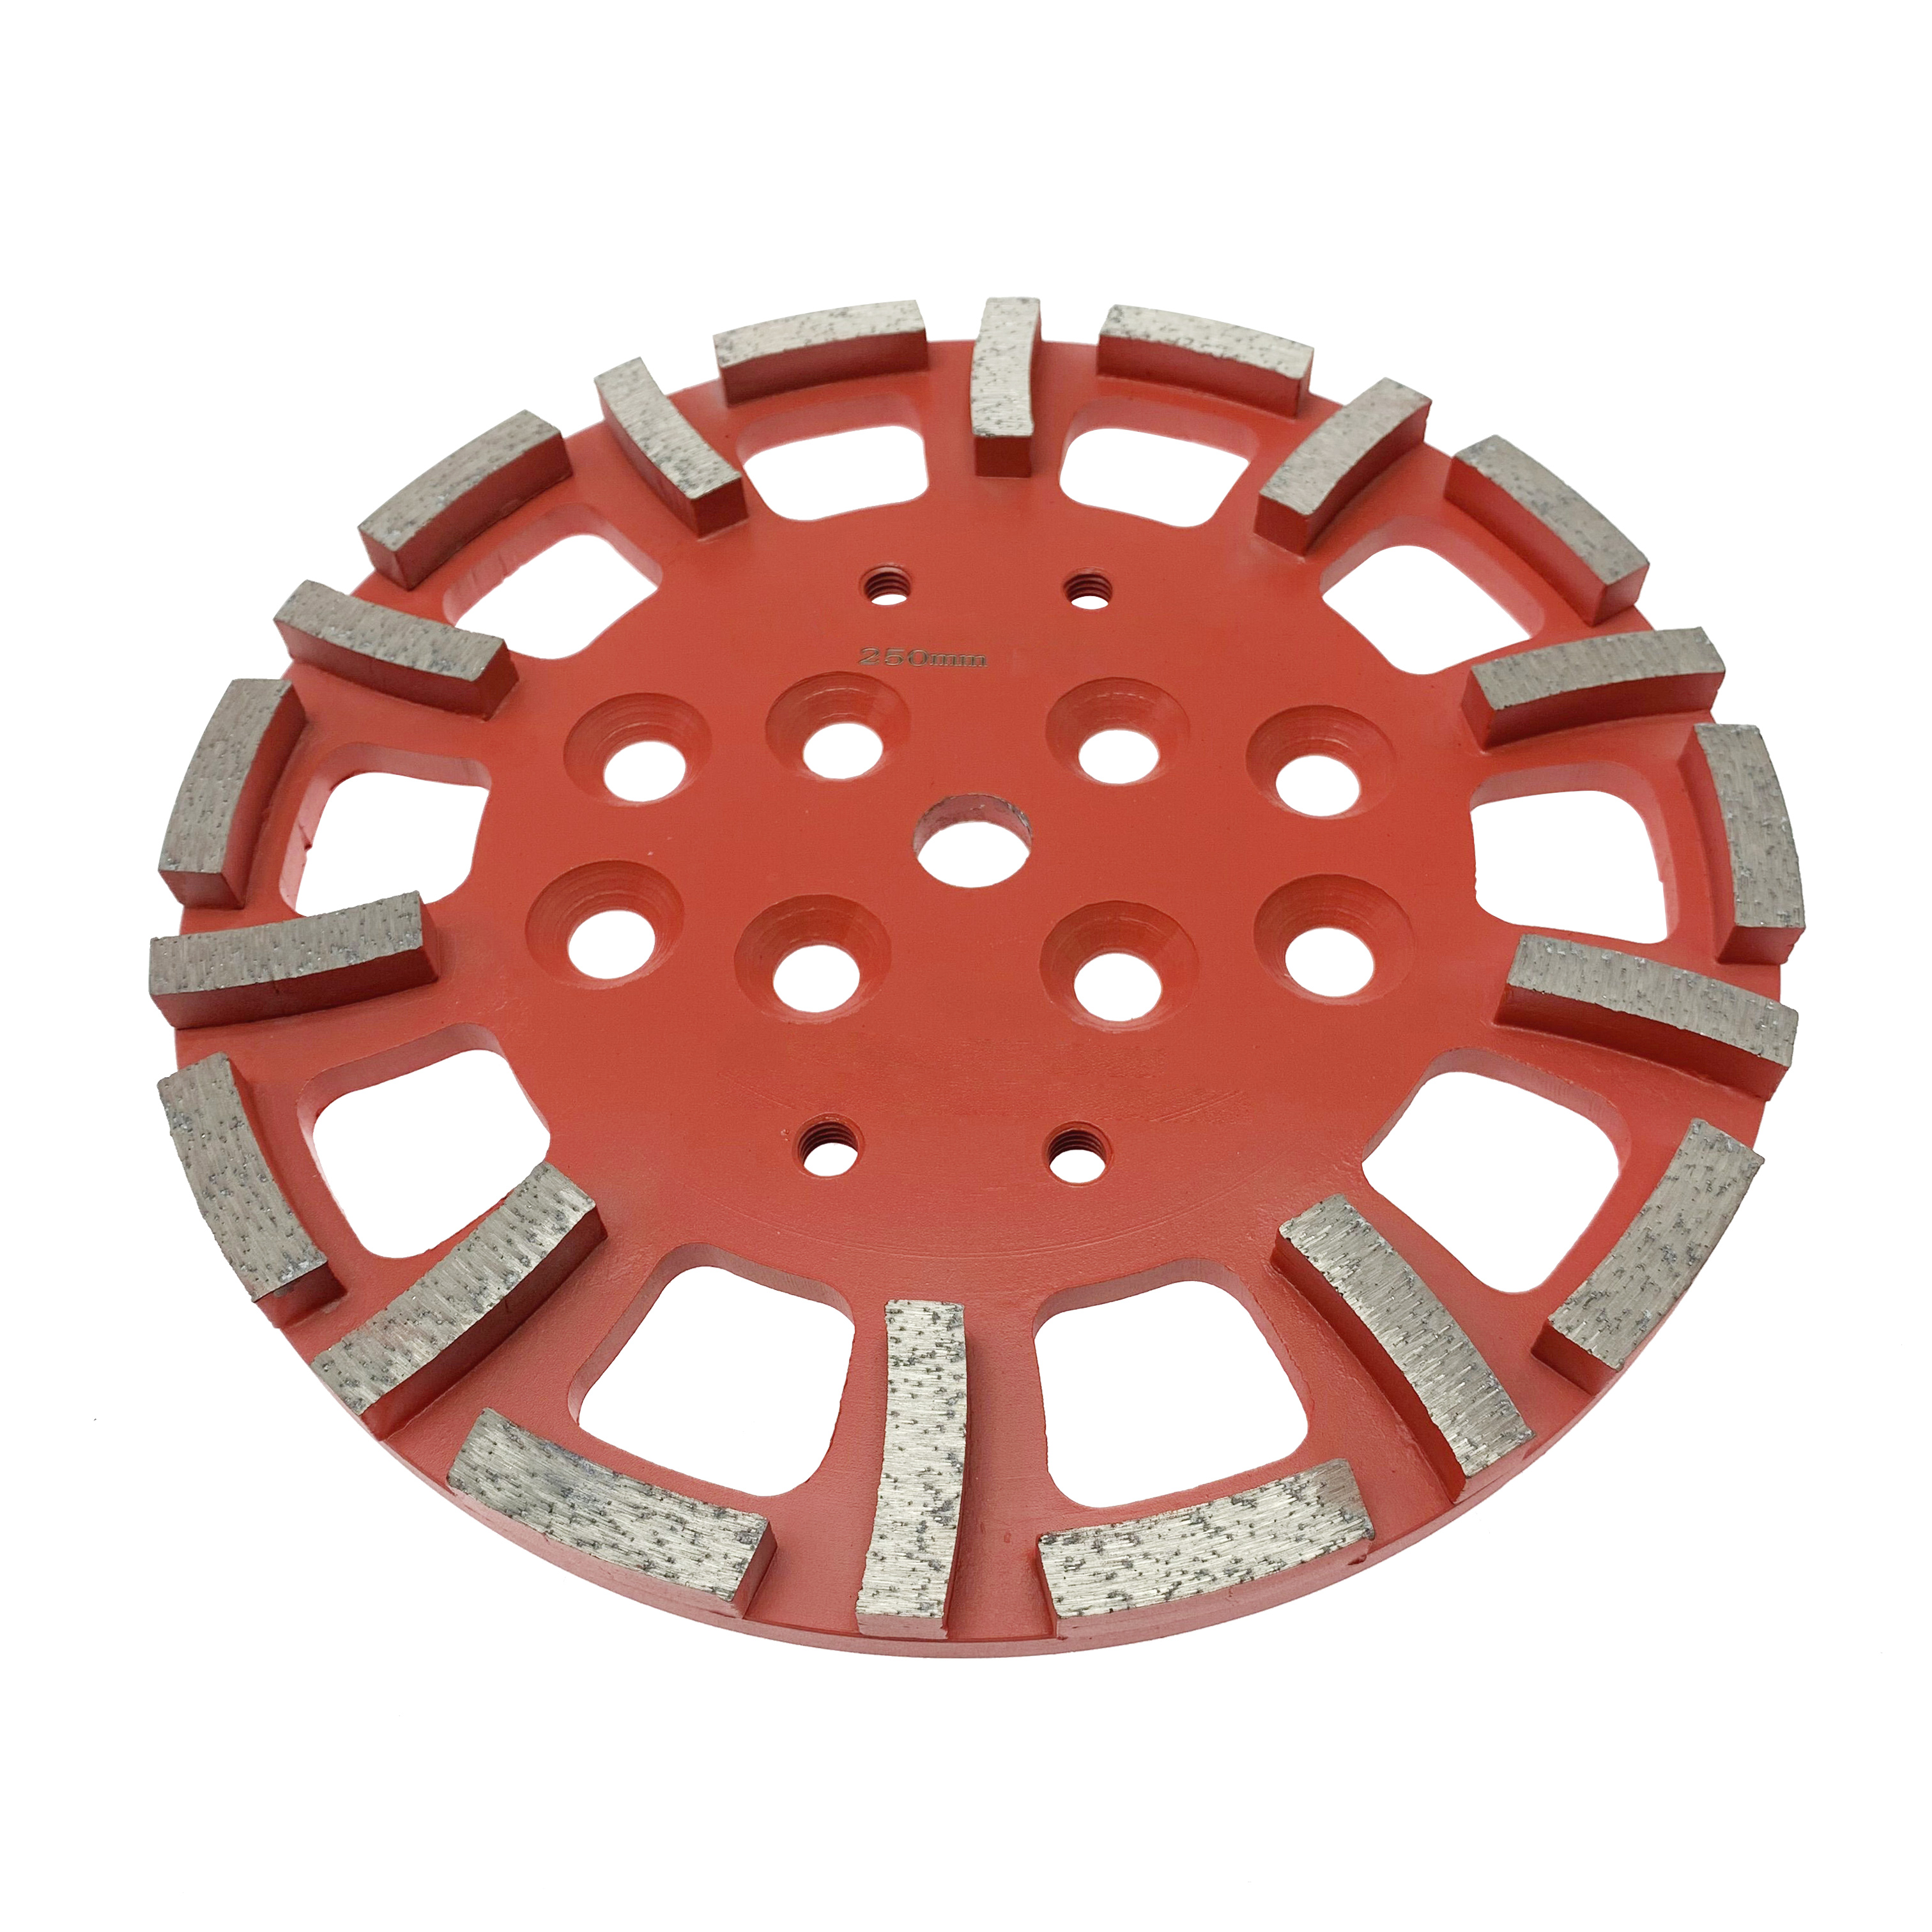 Sert beton için Premium Sınıf Gümüş Lehimli 10 inç bileme 250mm kırmızı elmas tekerlek taşlama diski